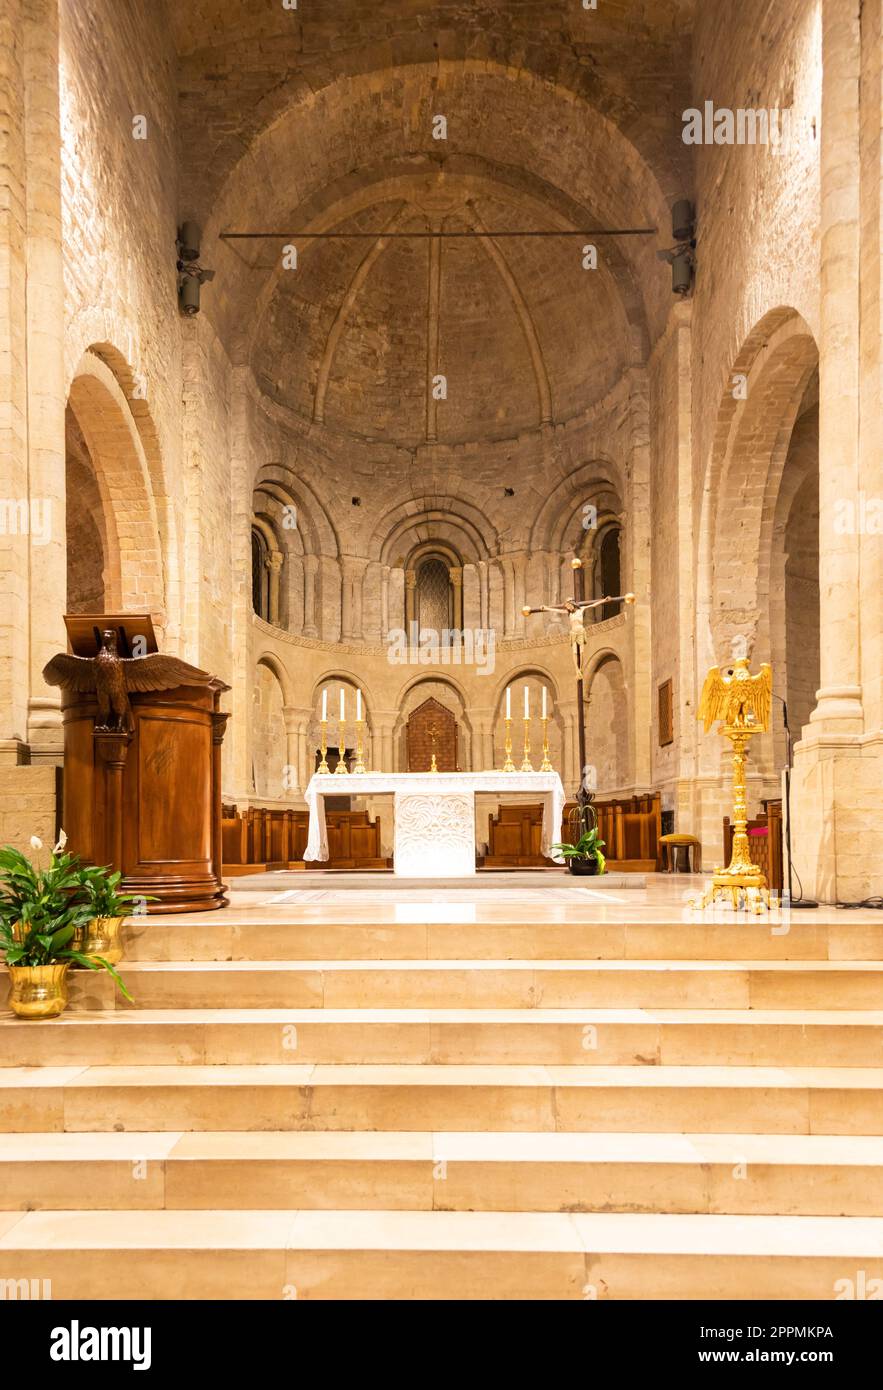 Ventimiglia - Italien - Innere der romanischen katholischen Kathedrale mit Altar Stockfoto